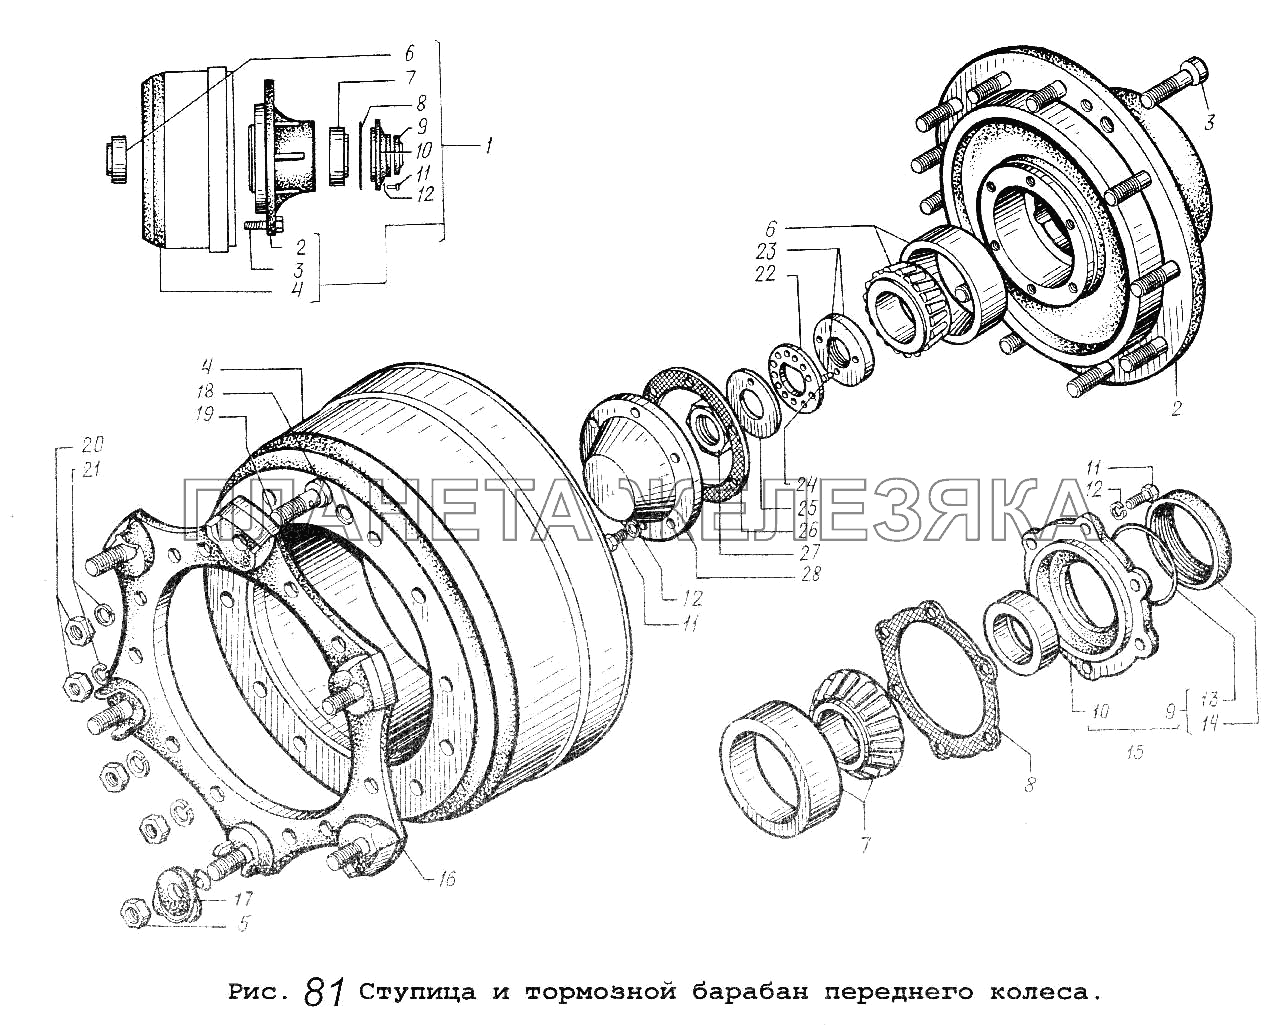 Ступица и тормозной барабан переднего колеса МАЗ-64229